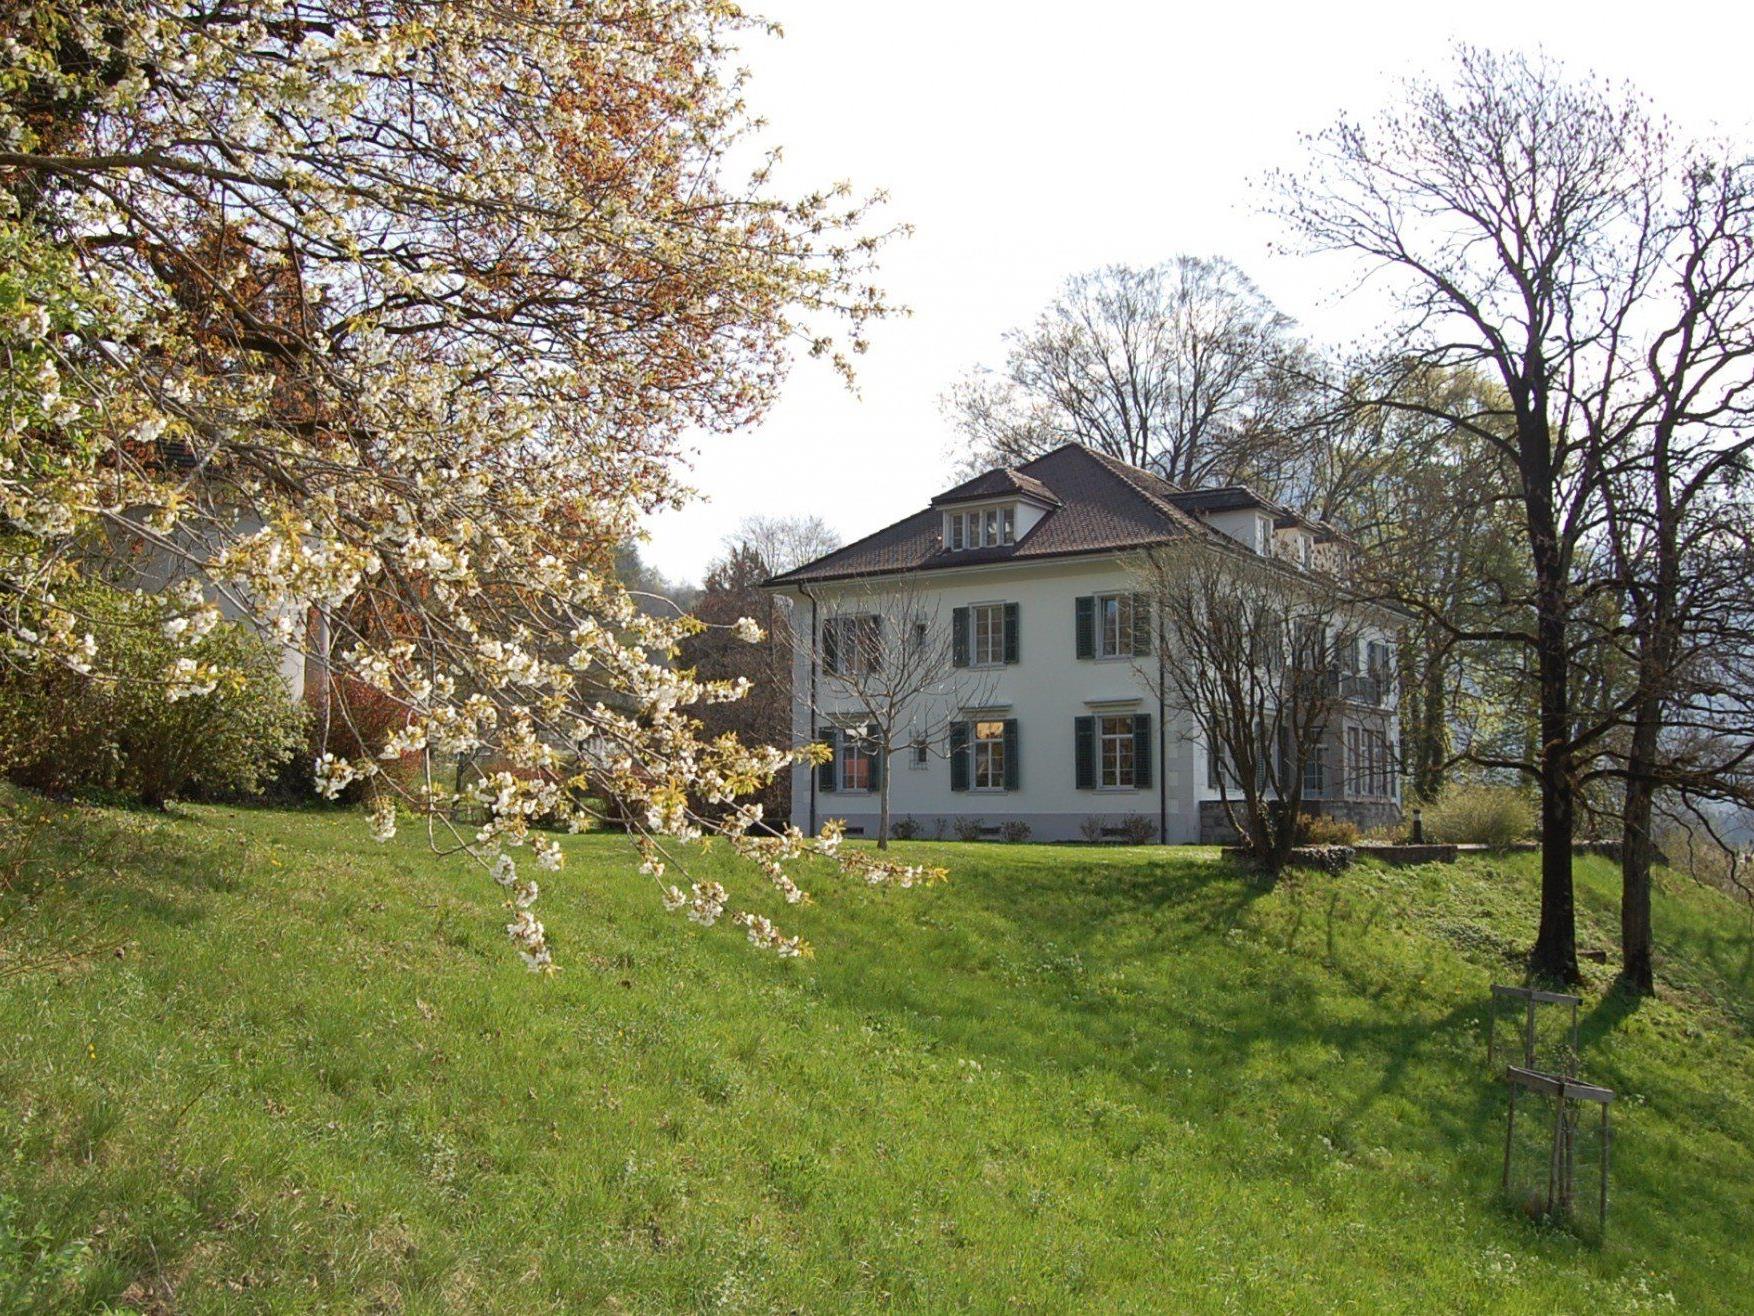 Unterhaltsames kulturelles Frühlings-Programm in der Villa Falkenhorst.